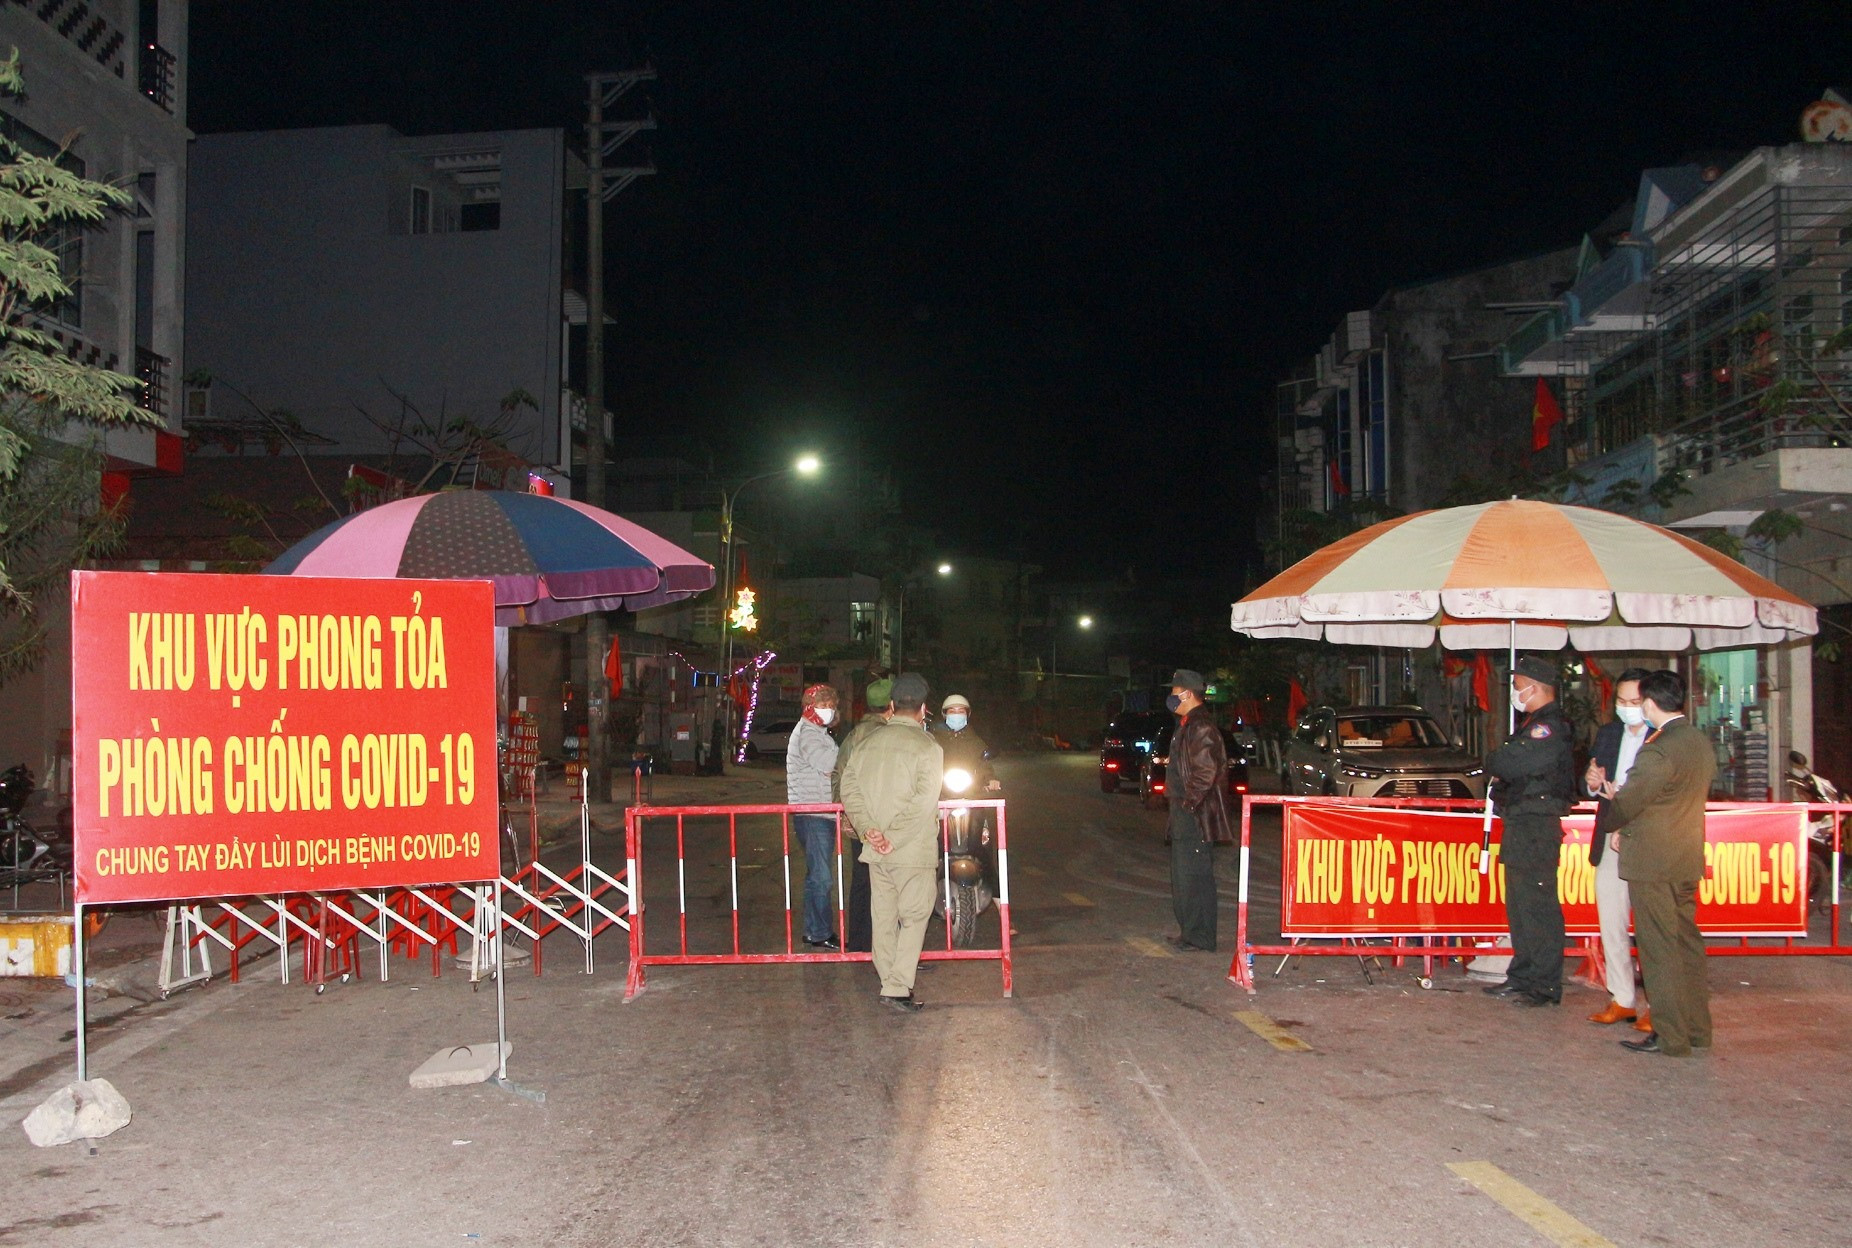 Chốt chặn kiểm soát dịch 24/24 tại huyện Vân Đồn, Quảng Ninh. Ảnh: Báo Quảng Ninh